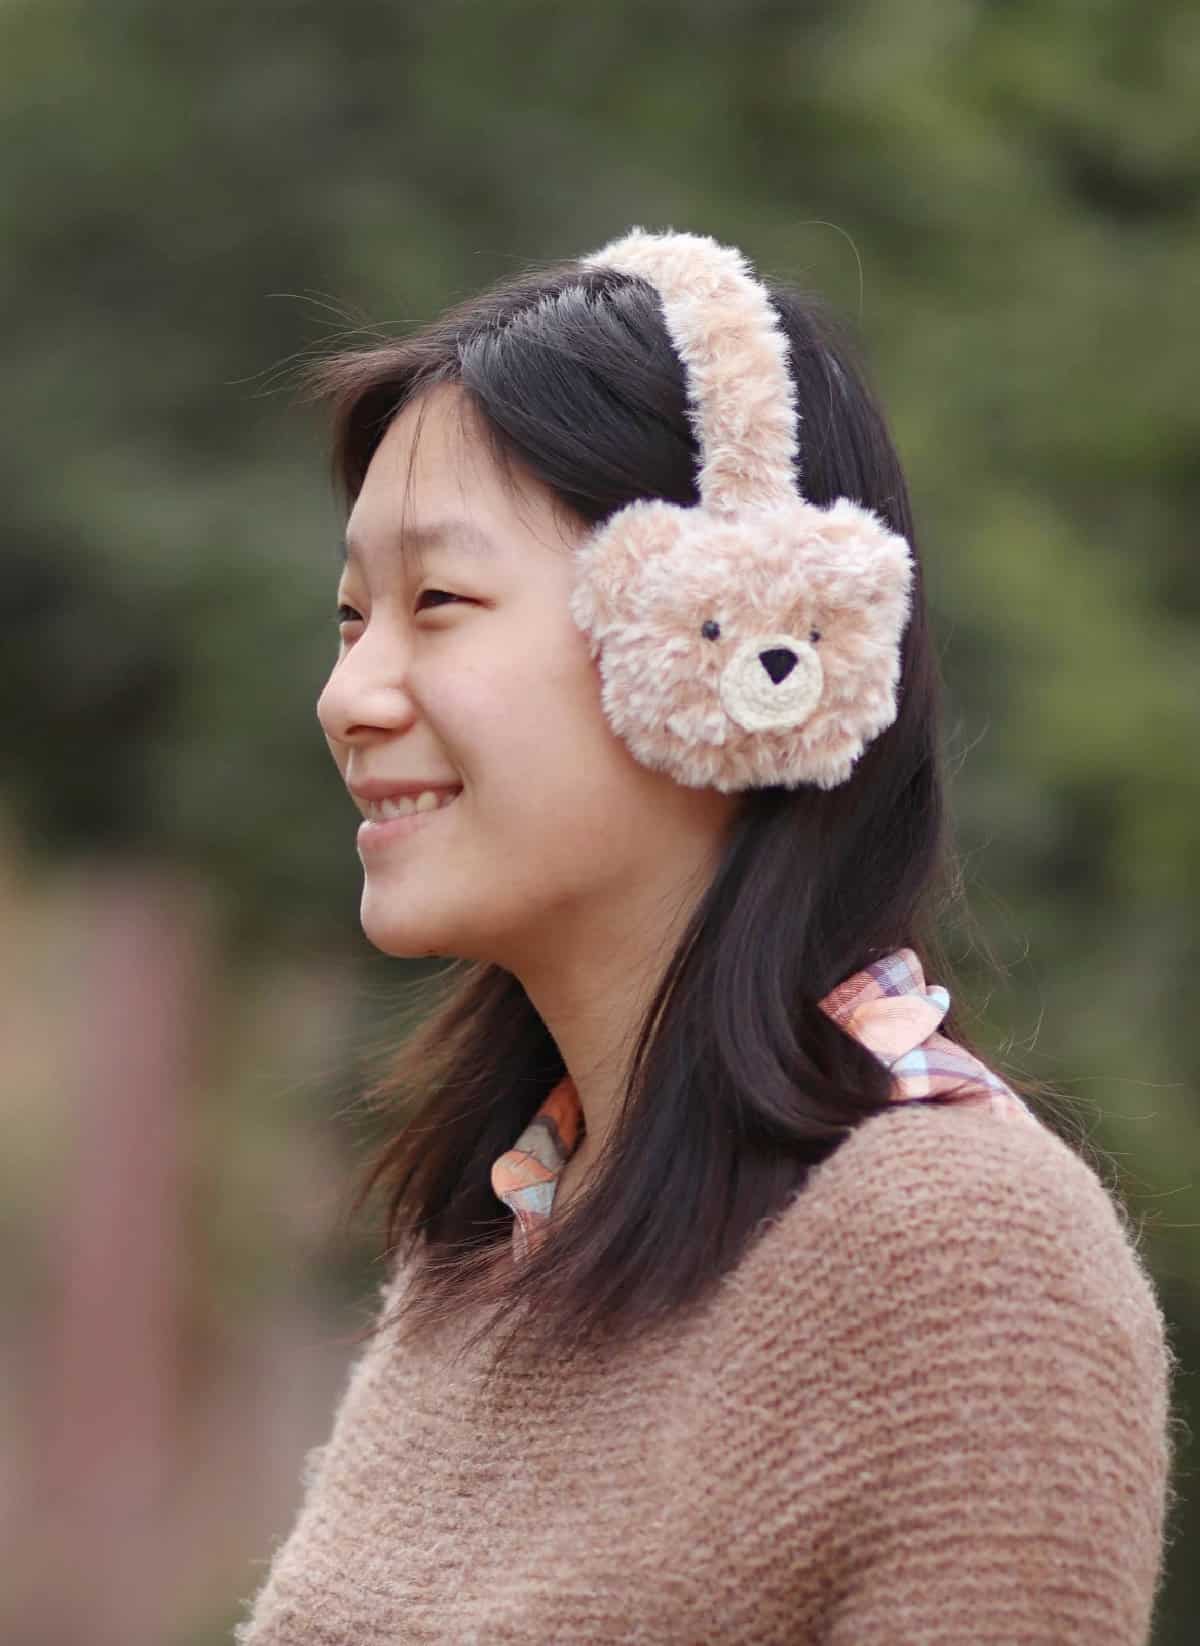 Girl smiling and modeling cute little faux fur crochet teddy bear earmuffs.